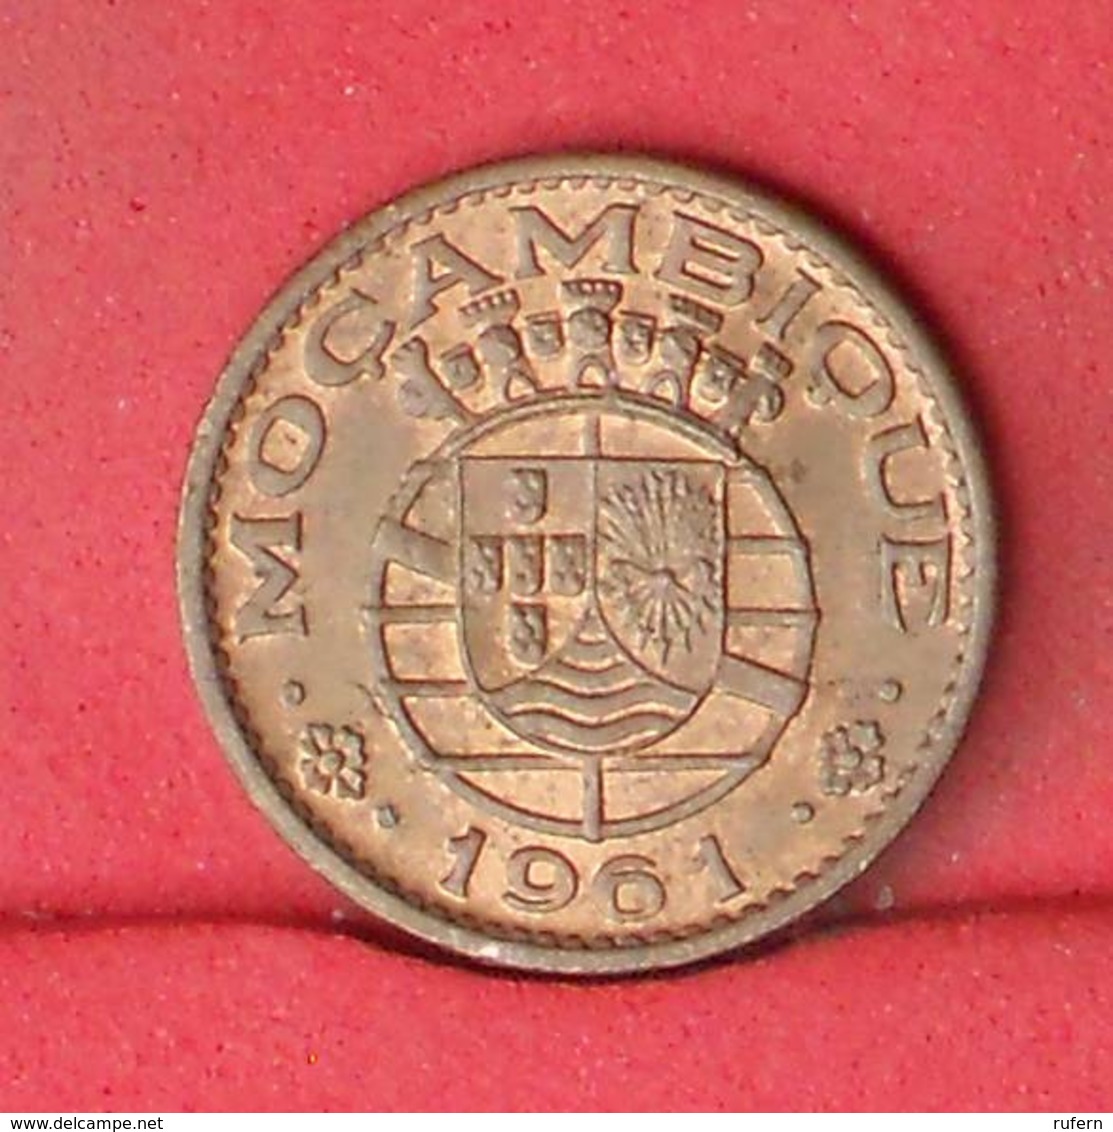 MOZAMBIQUE 20 CENTAVOS 1961 -    KM# 85 - (Nº32250) - Mozambique